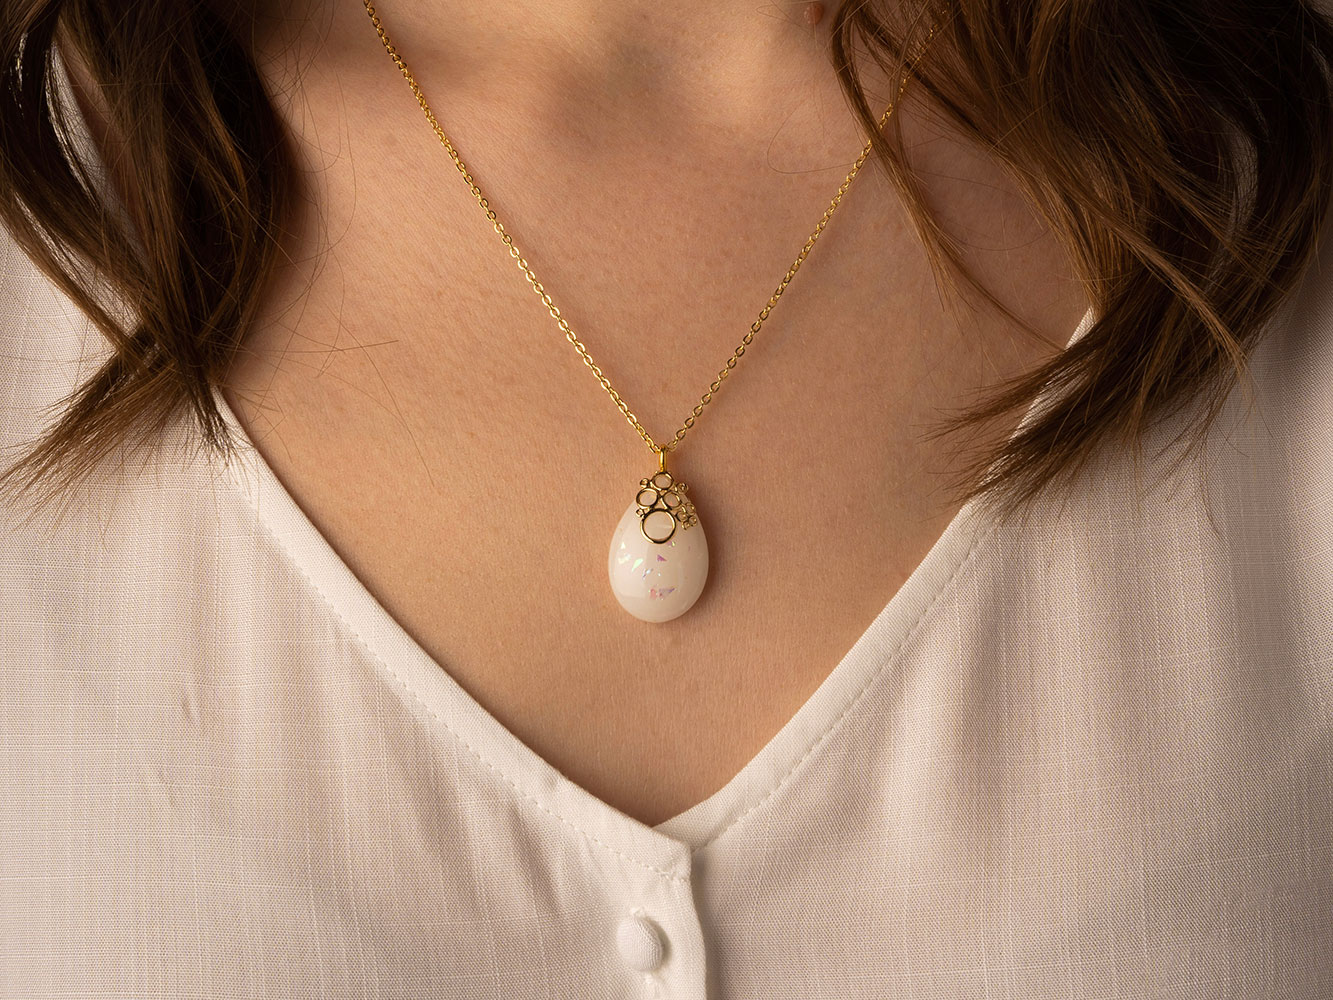 Breastmilk Jewelry Gold Necklace Model Keepsakemom